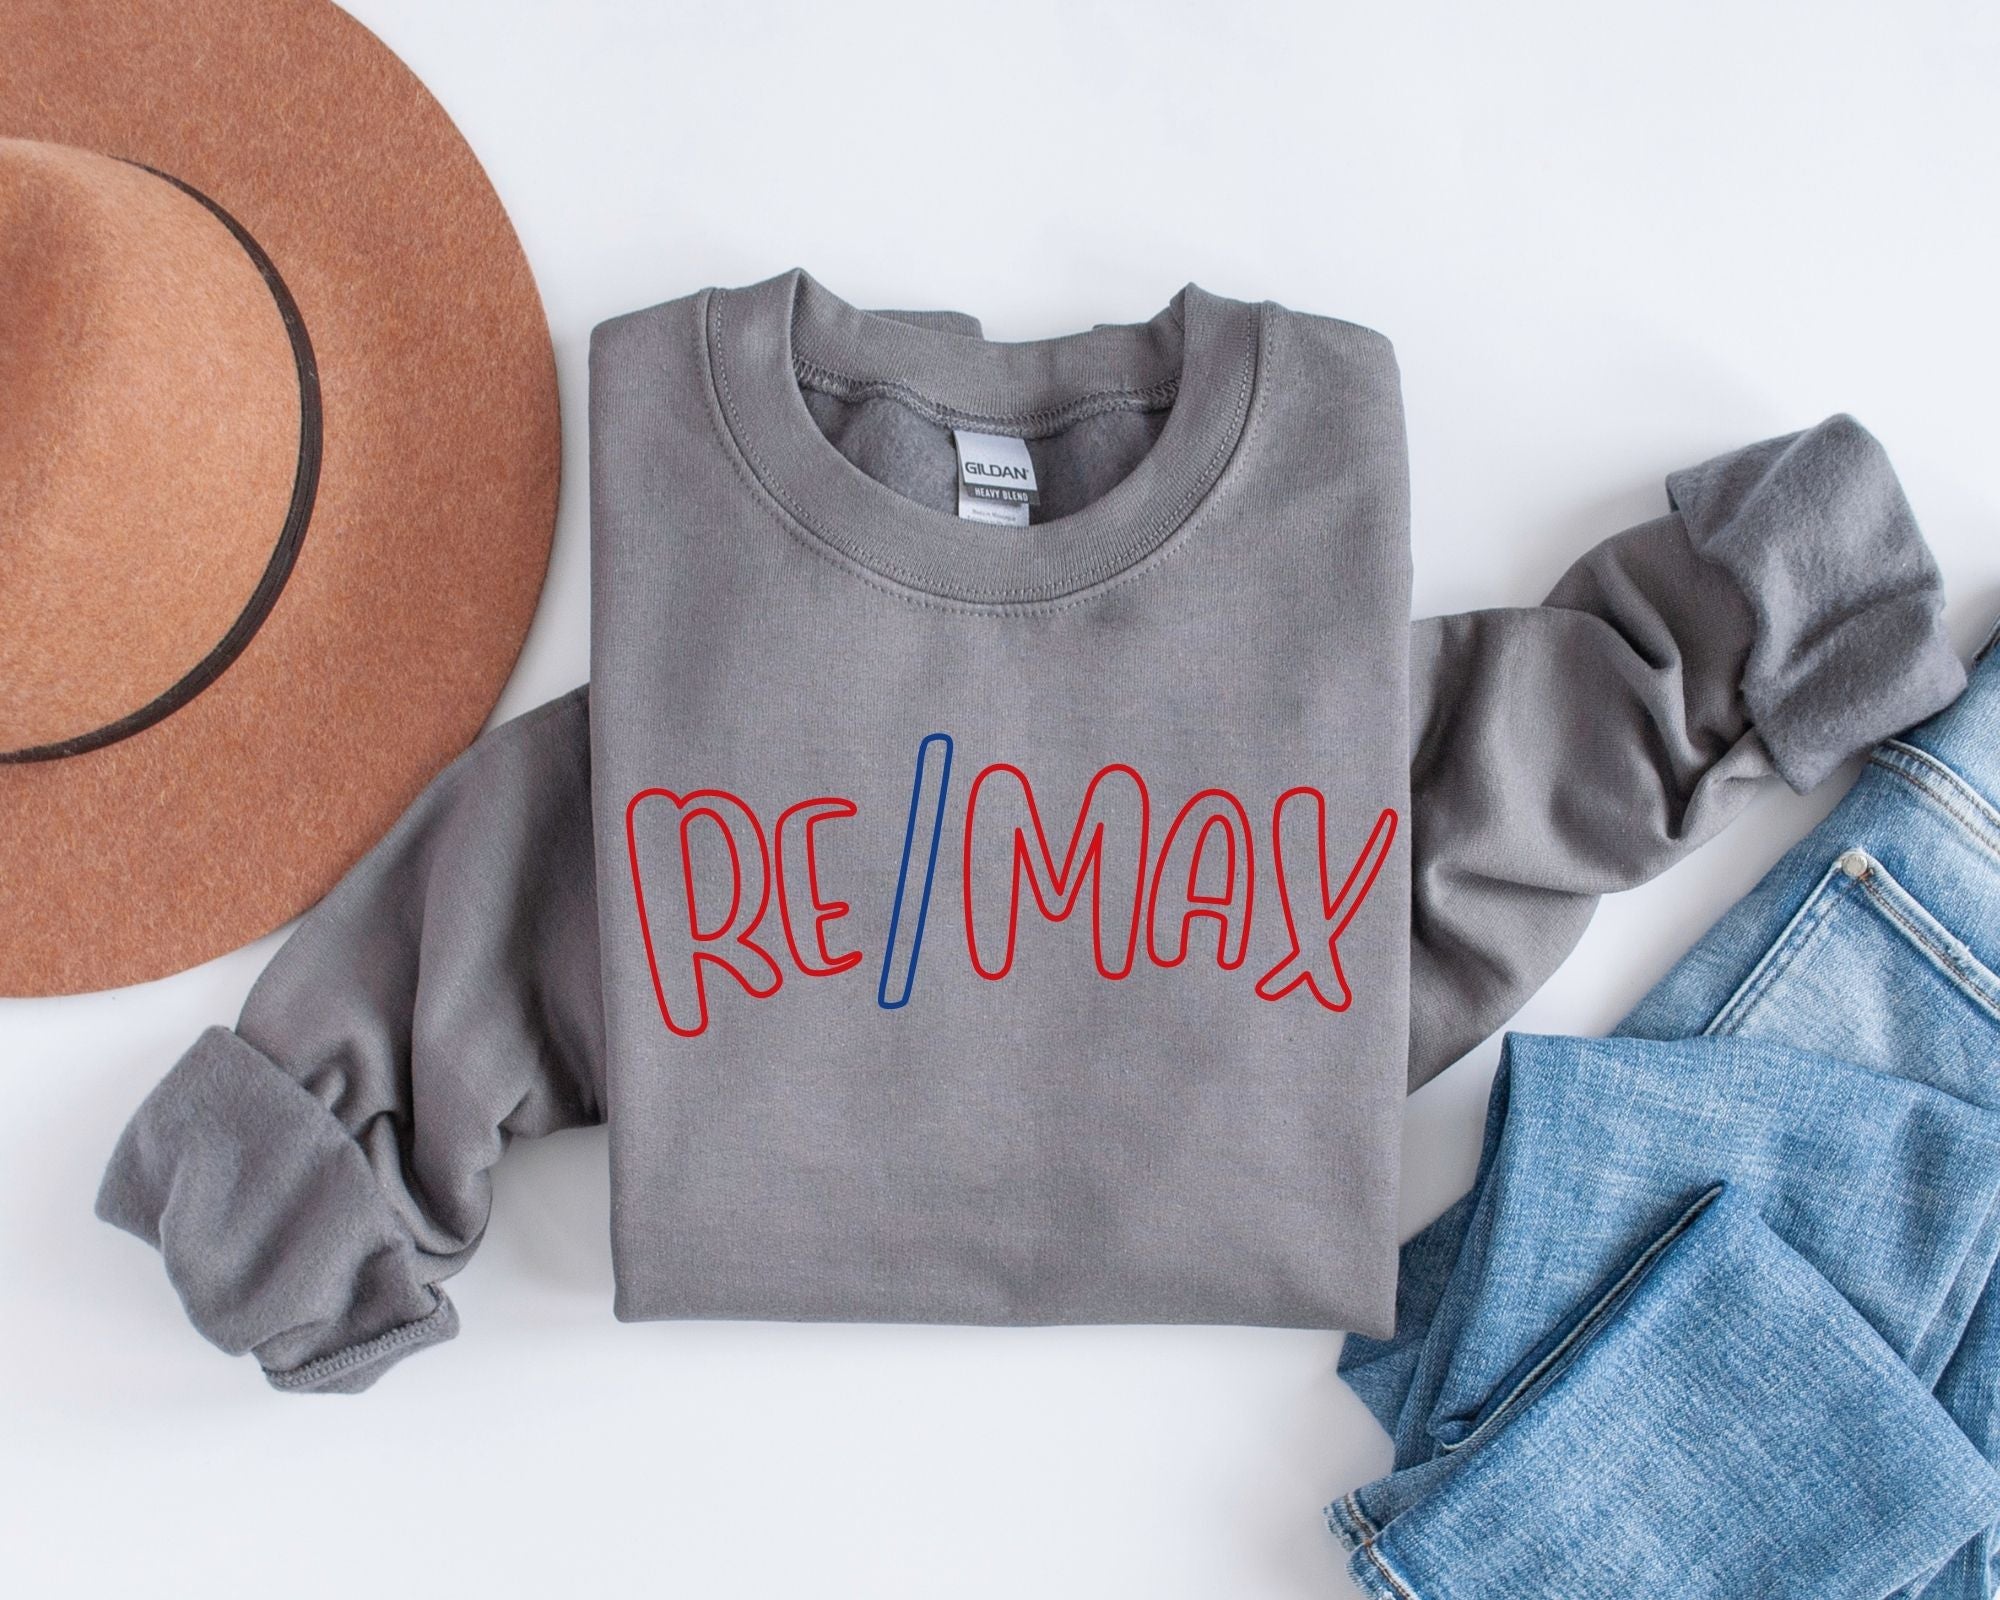 Remax Sweatshirt or Tee